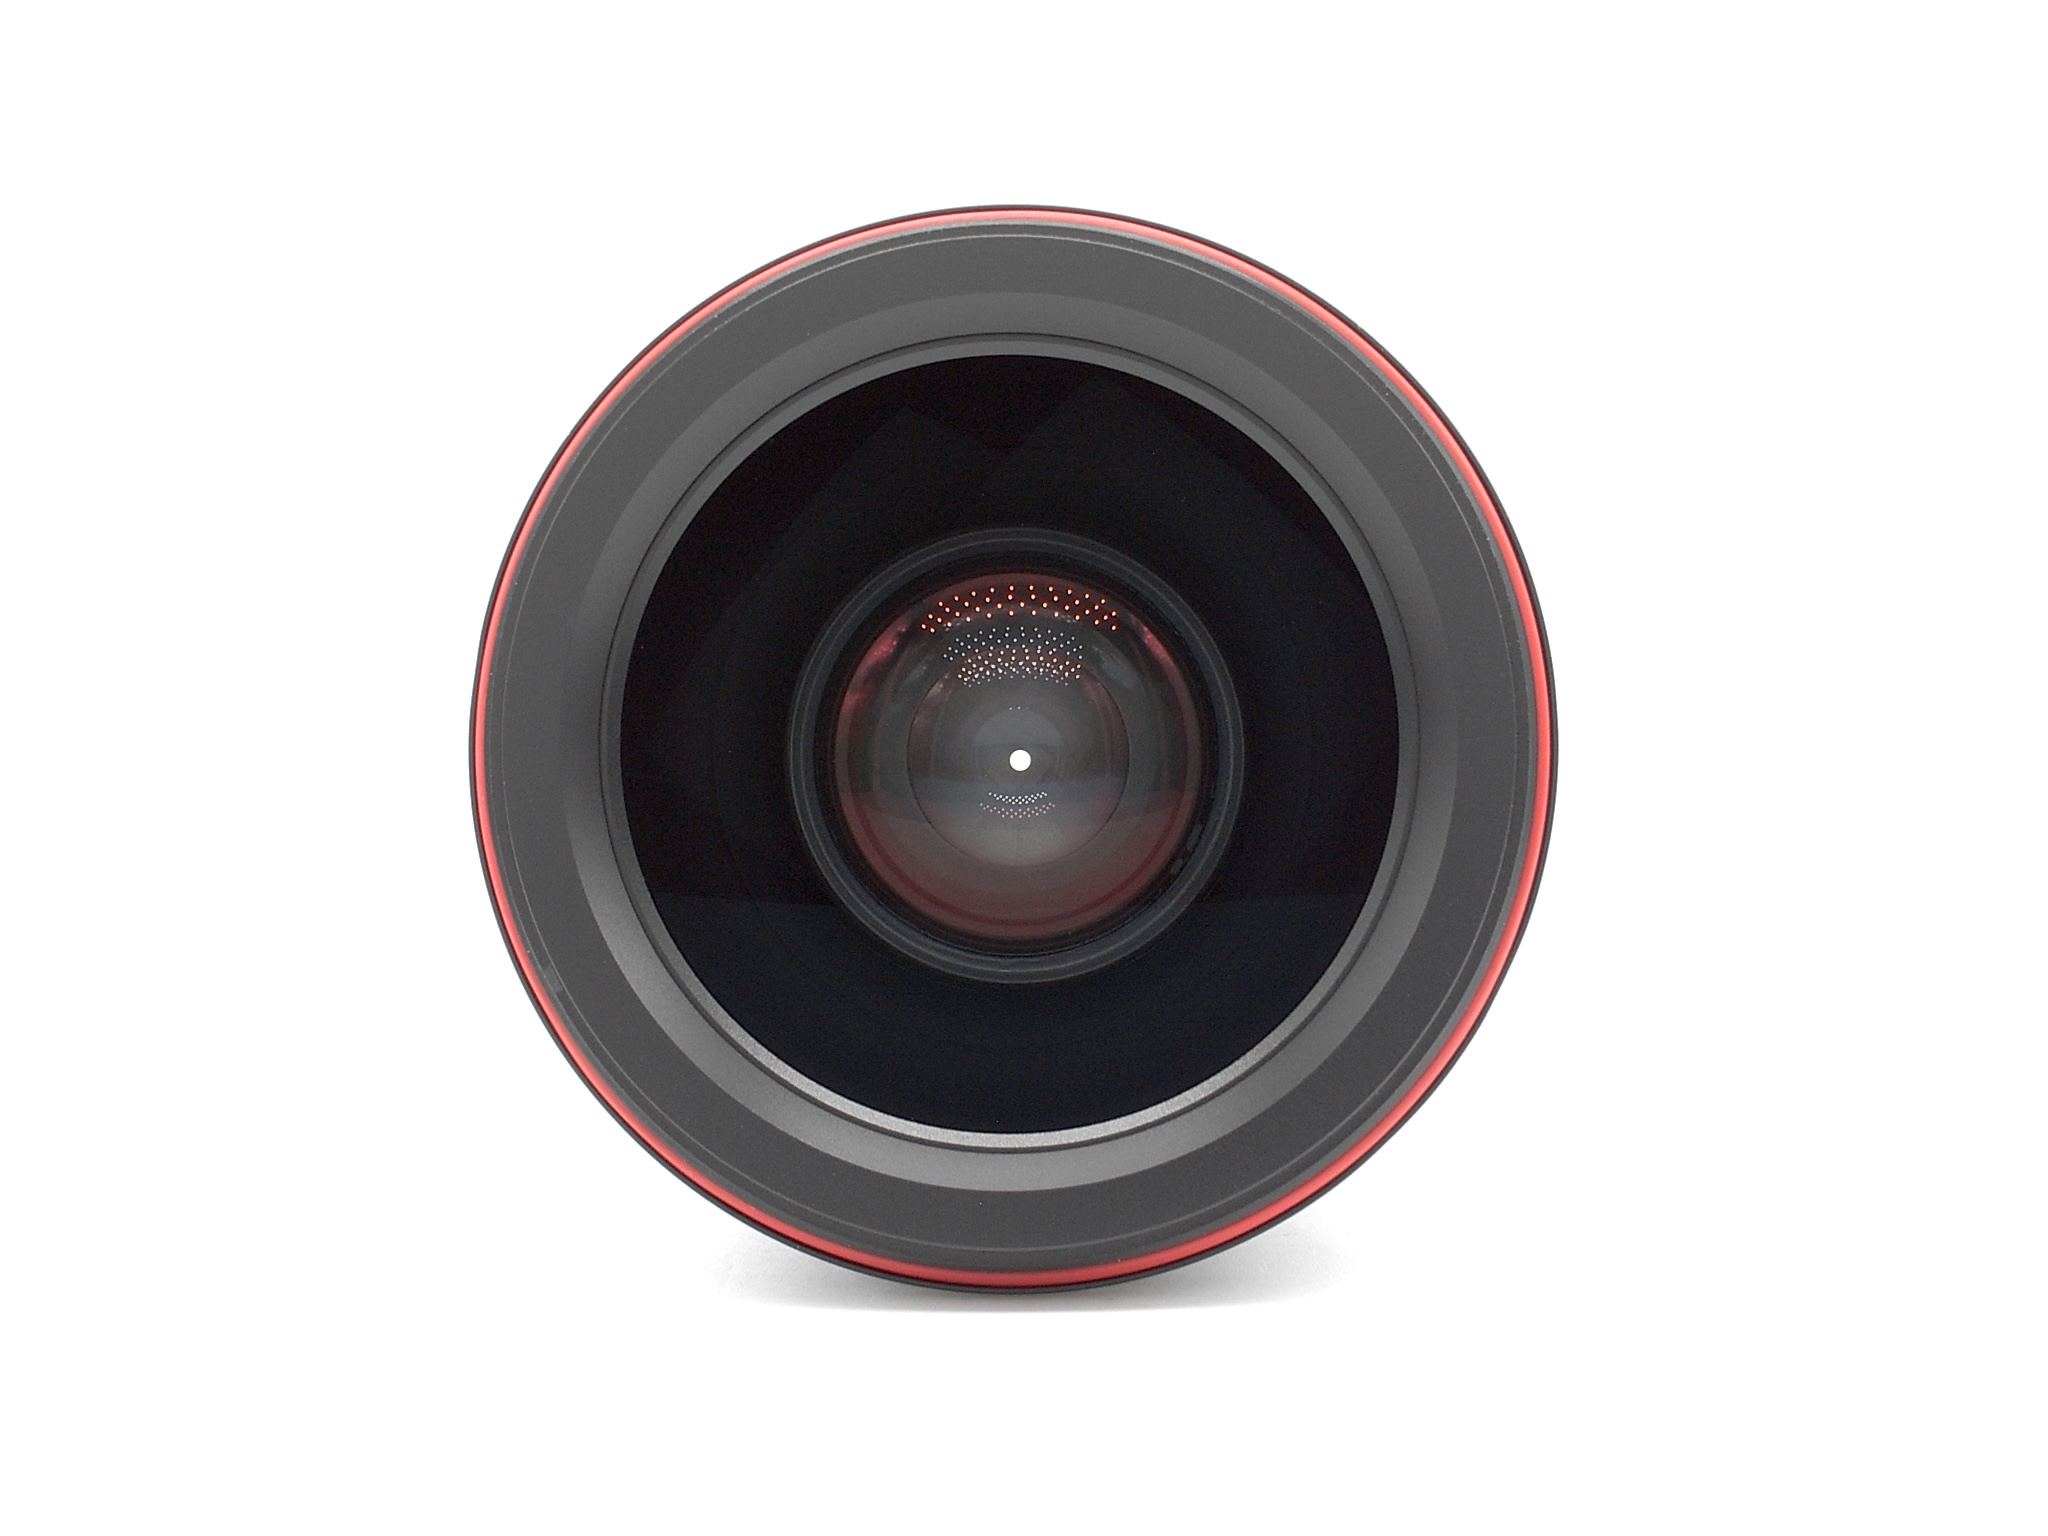 Leica Summilux-M 1.4/21mm ASPH. schwarz 6Bit